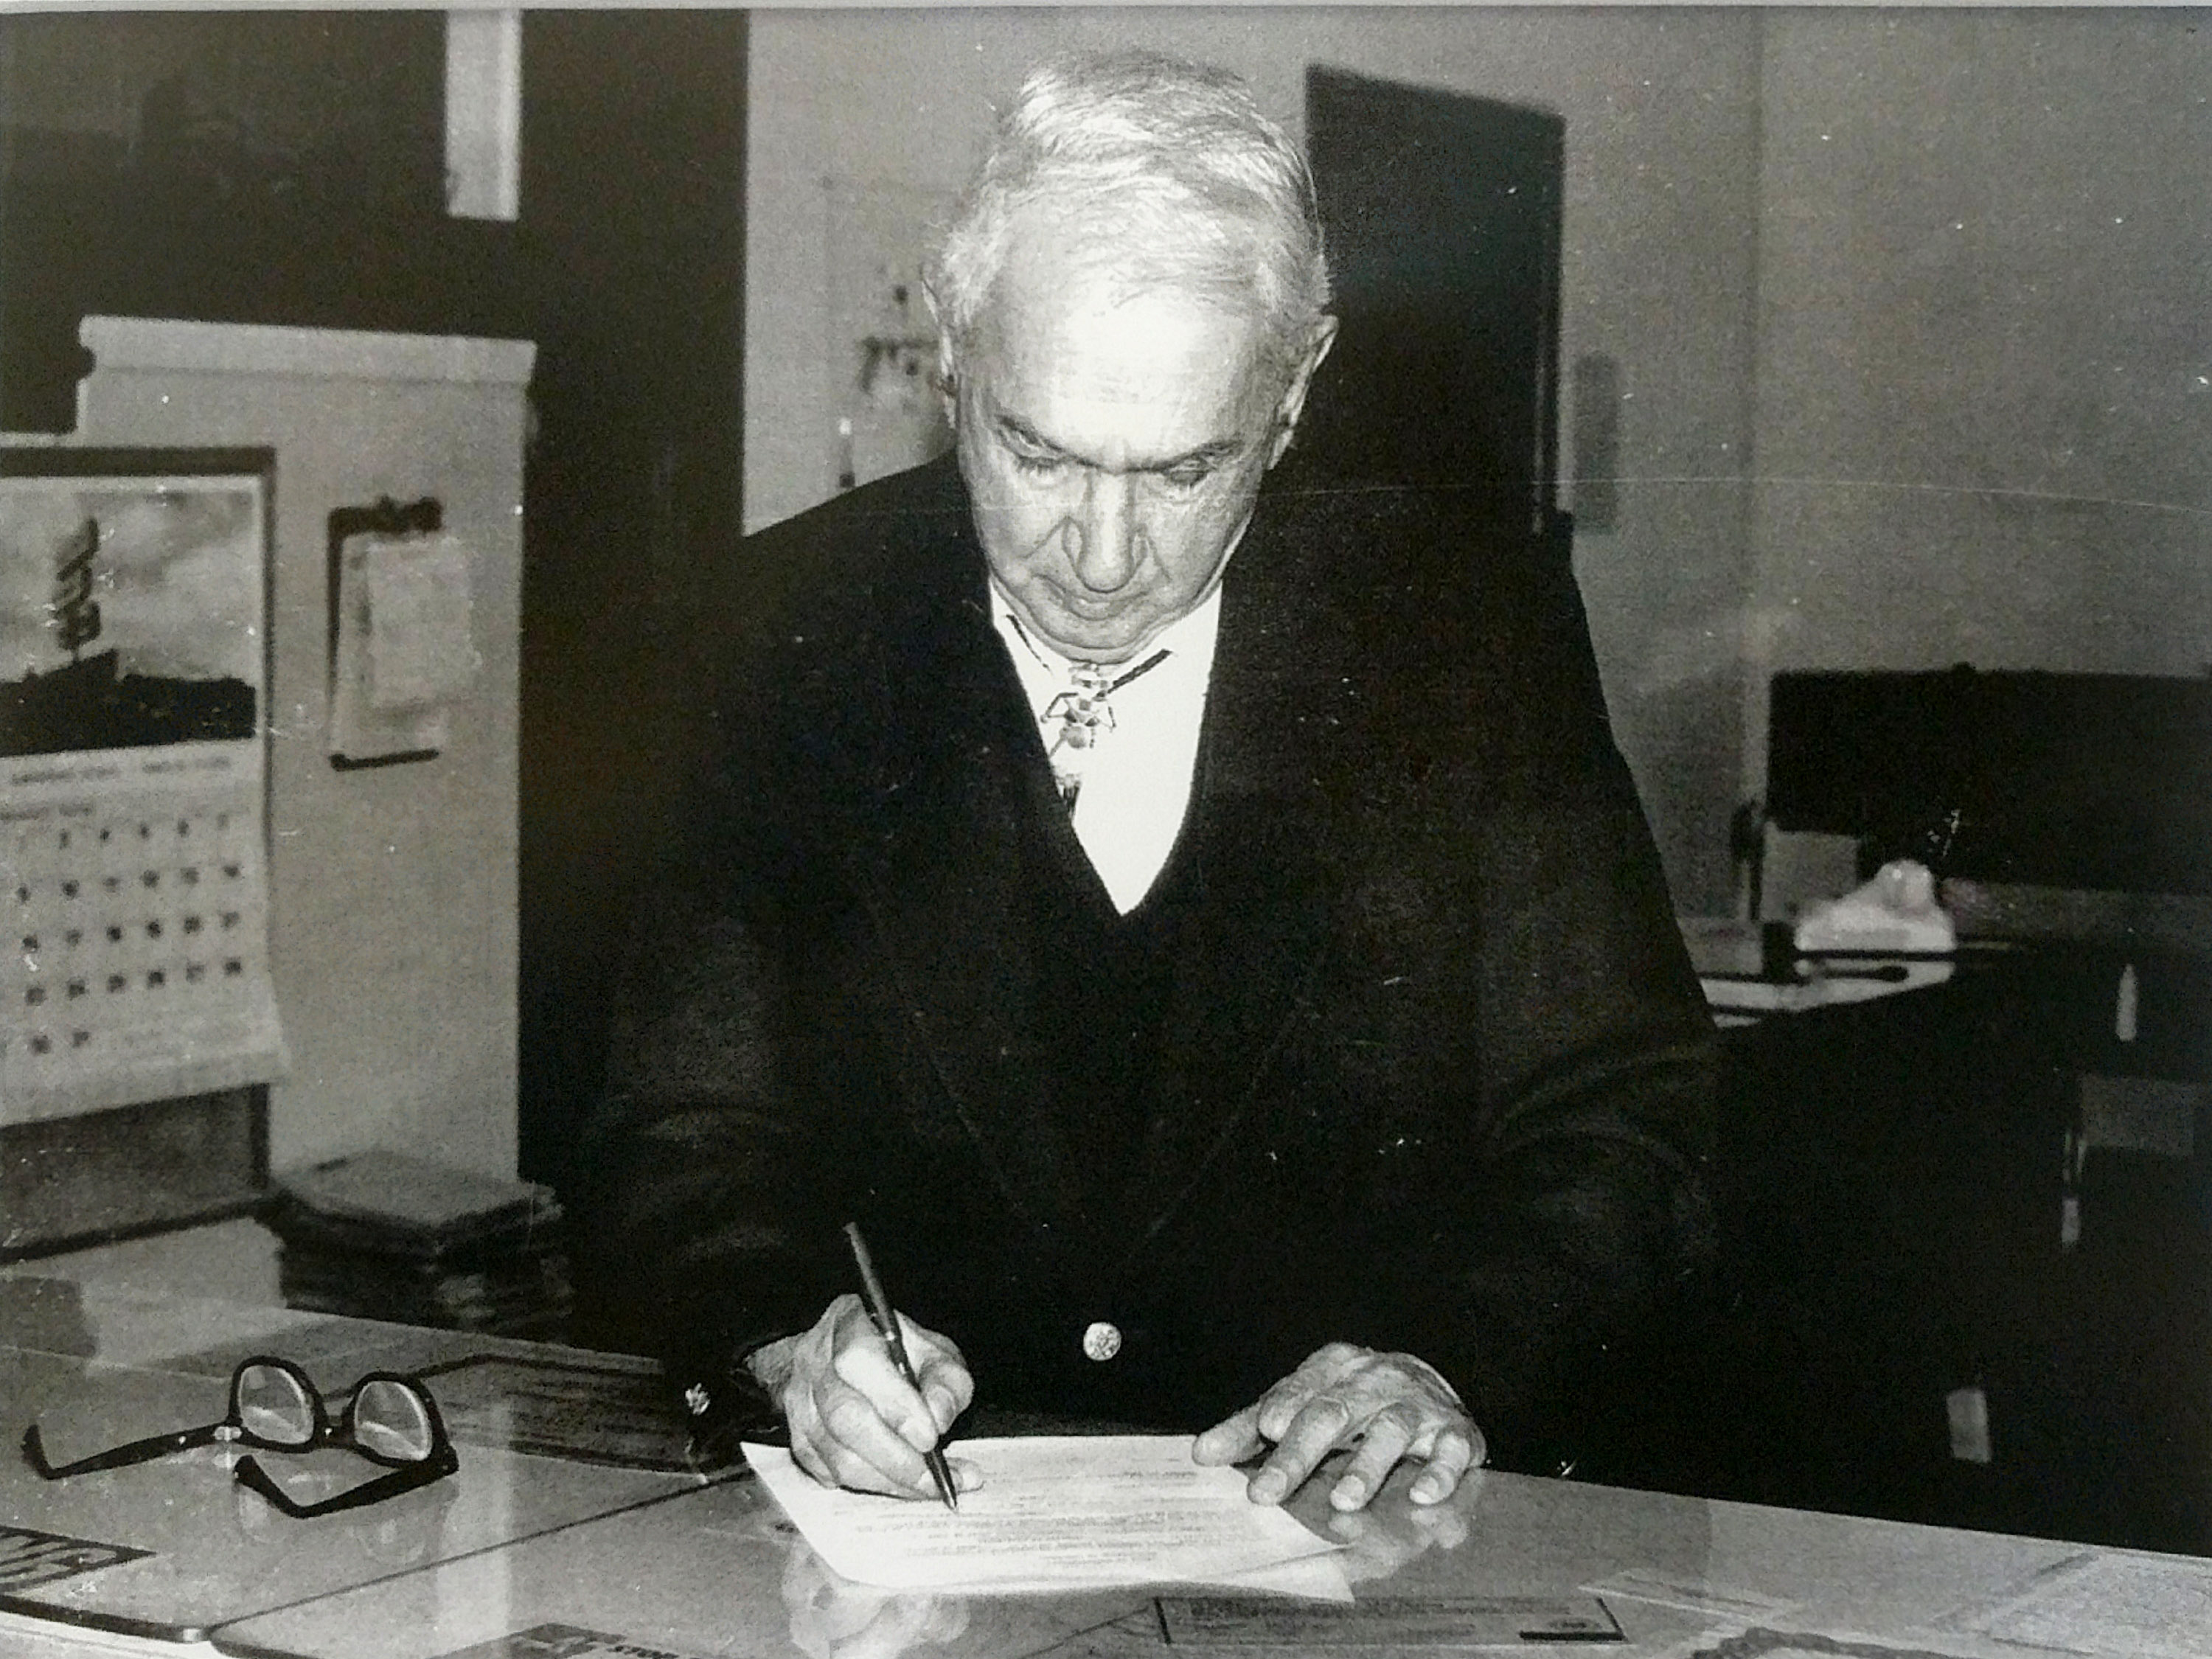 Mayor Salvador Milan 1972